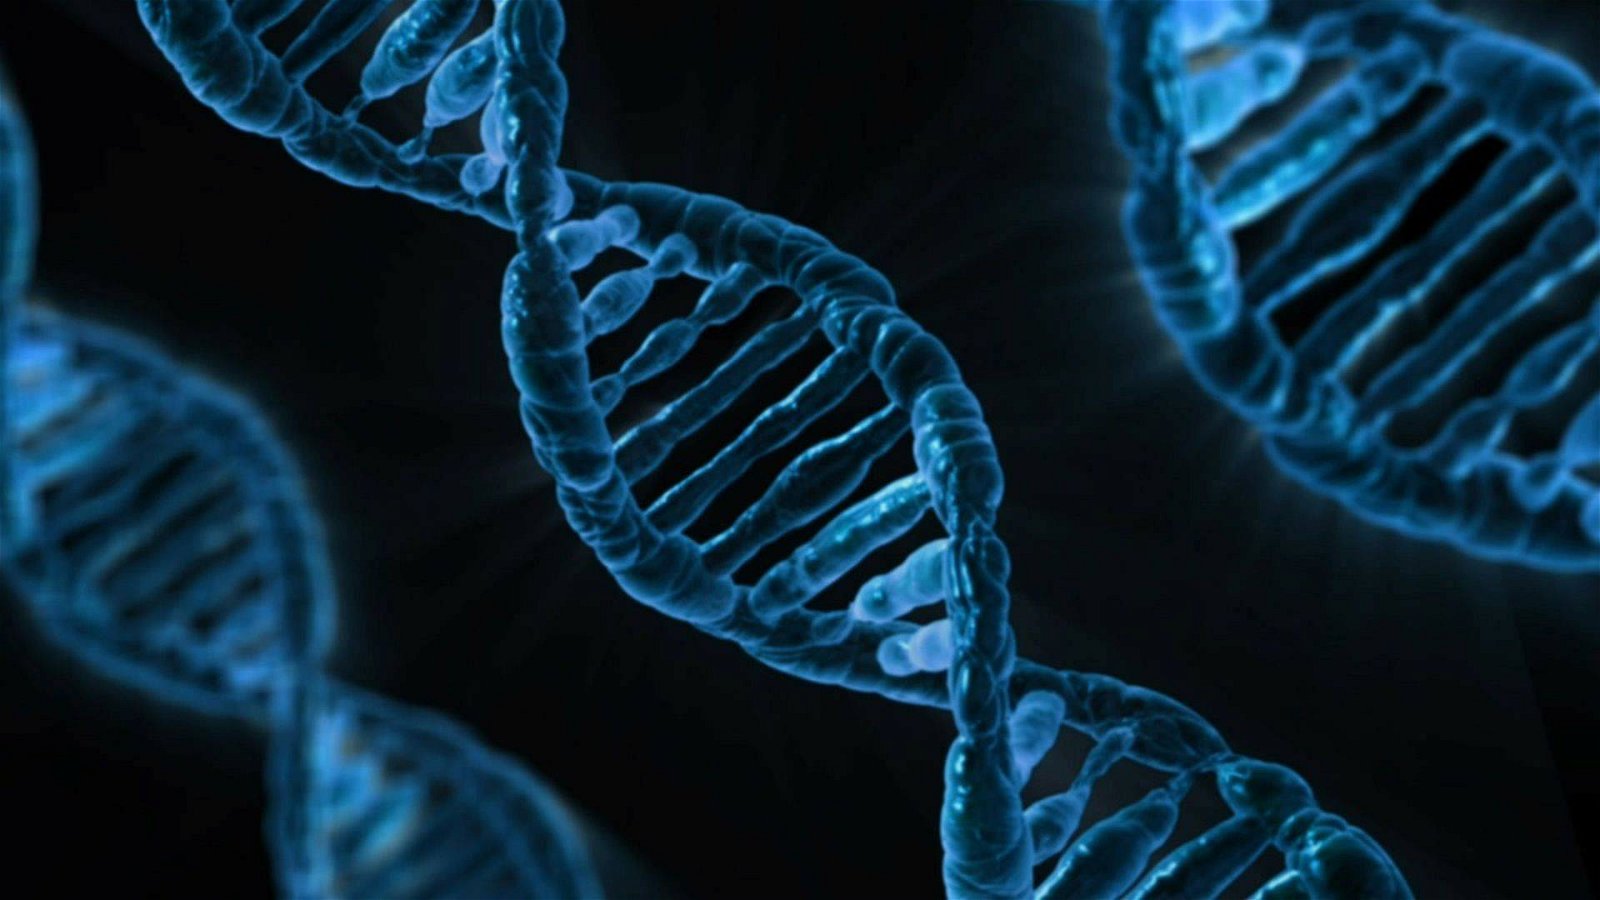 Immagine di Le basi della vita stessa in uno studio senza precedenti sul DNA